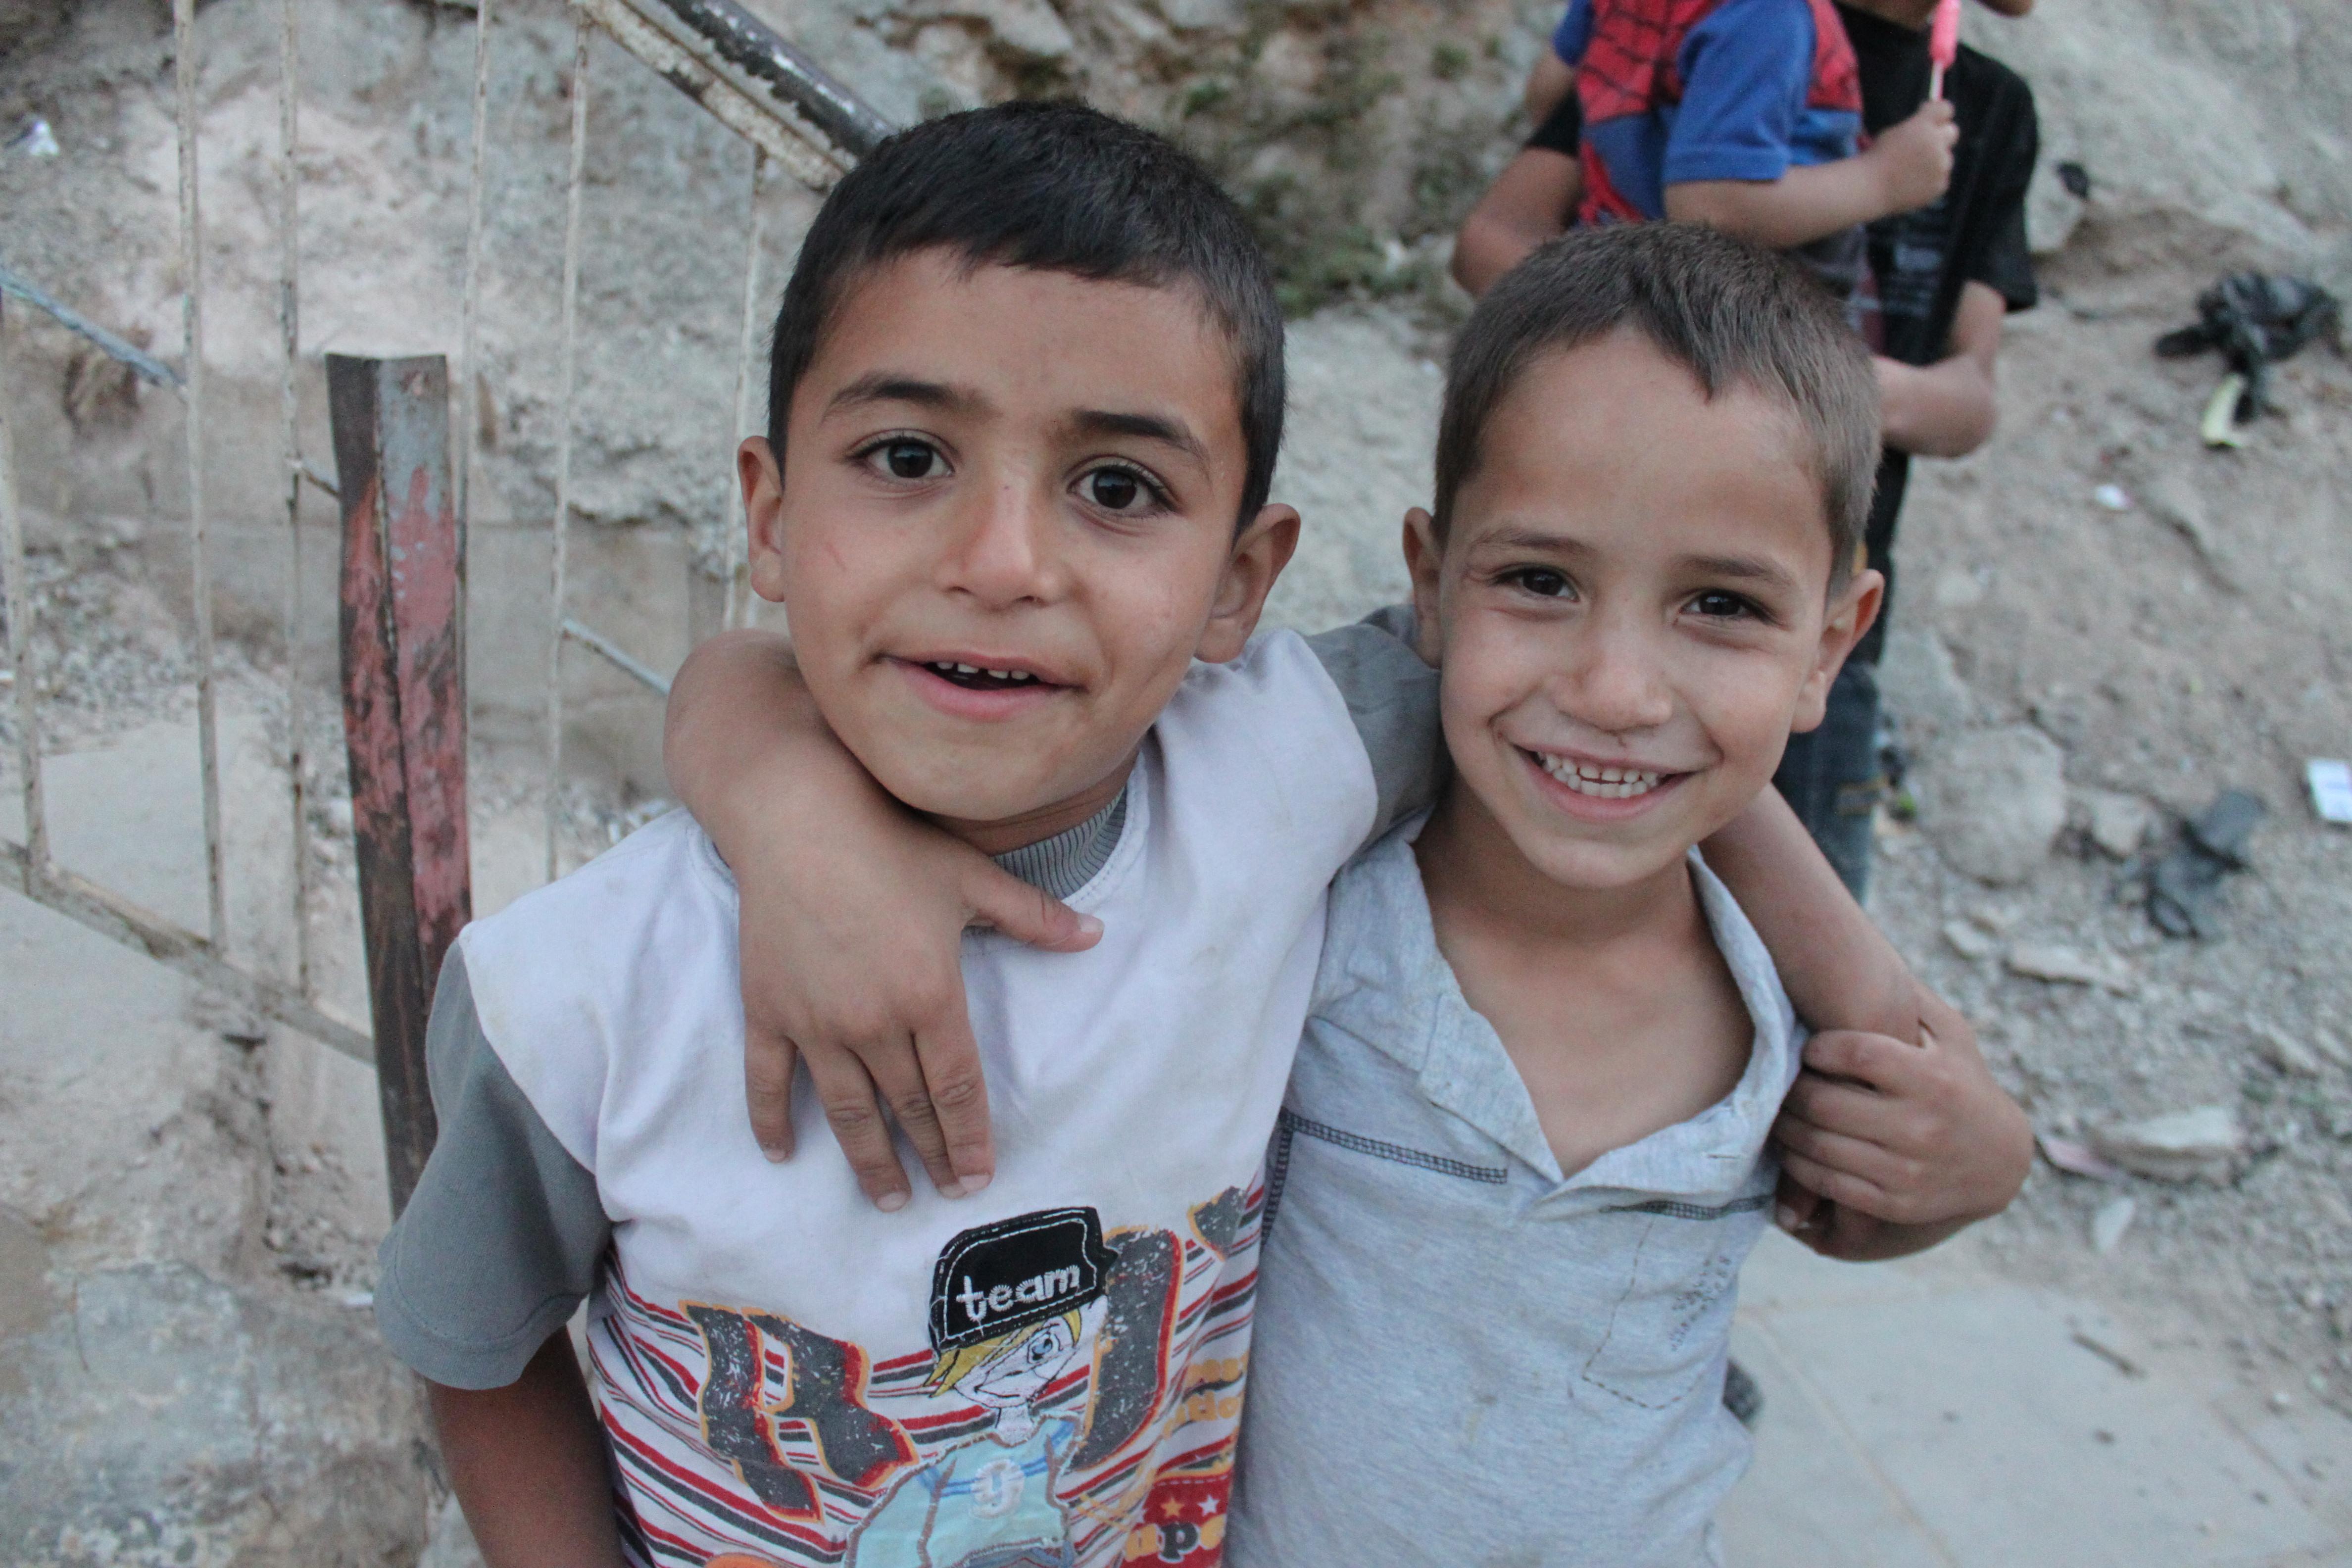 巴勒斯坦难民营的小孩子别把那儿想得太可怕,人家也正常过日子跟咱一